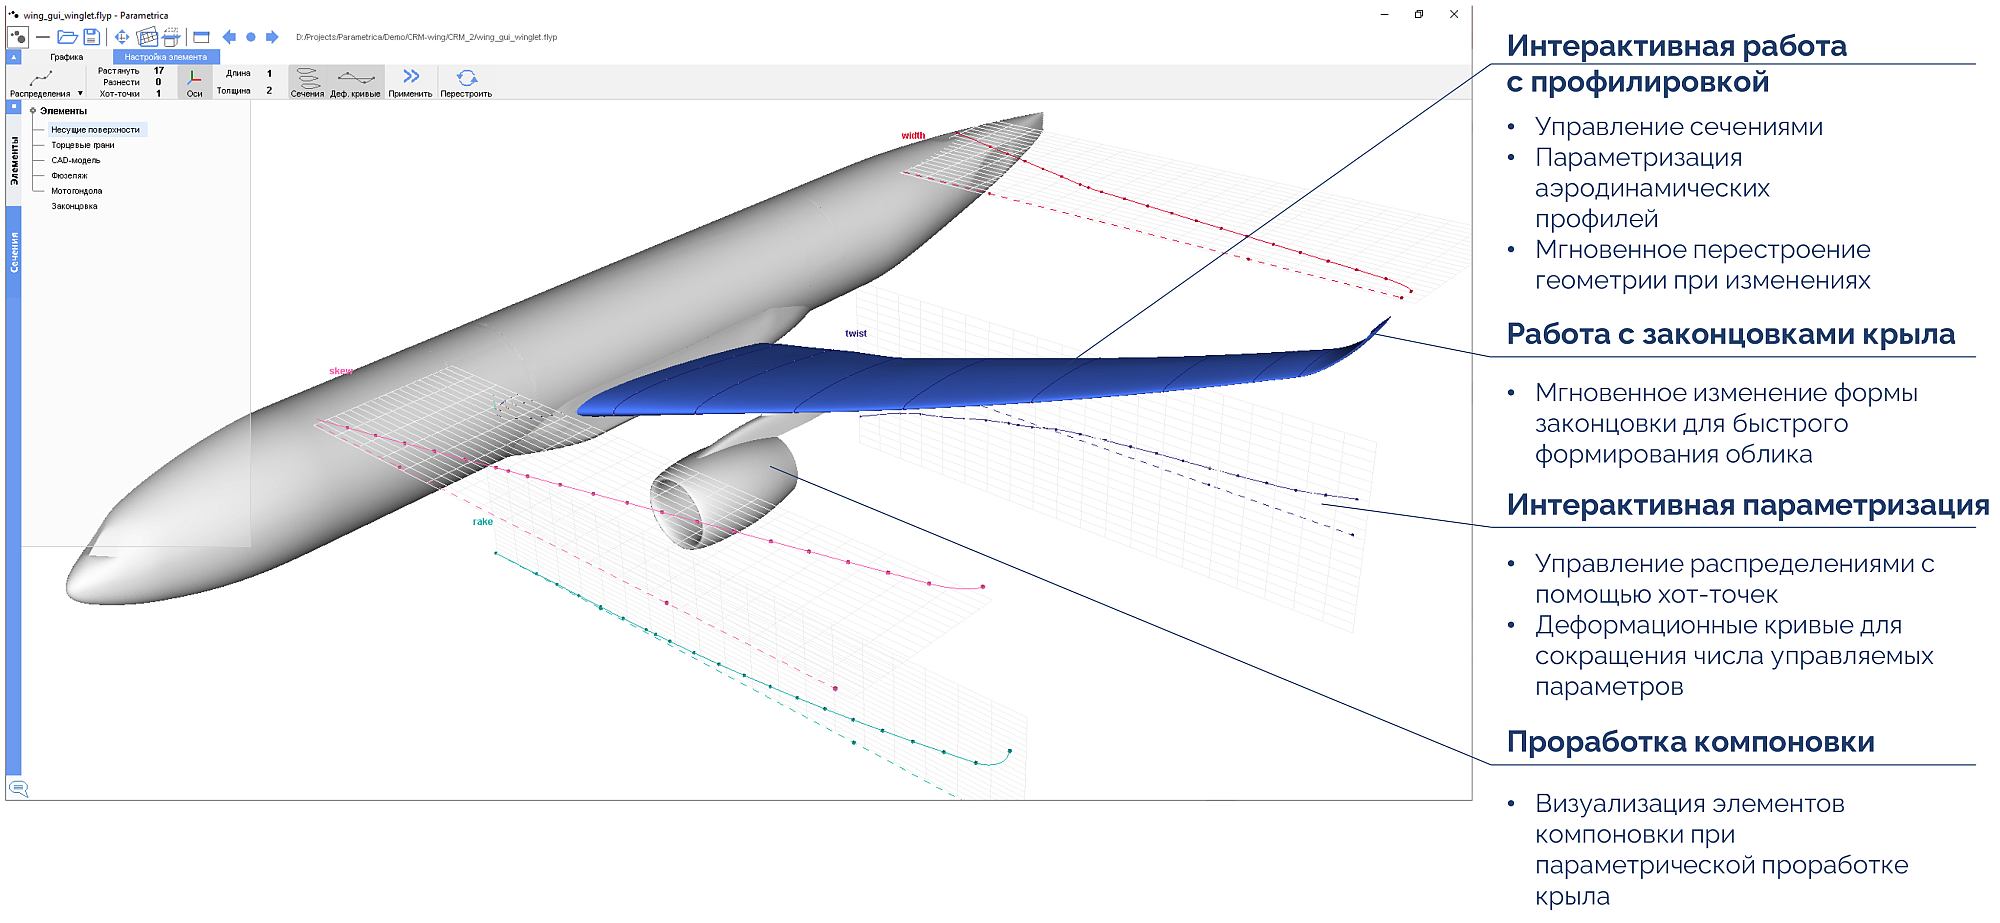 Рис. 3. Параметрическая модель гражданского самолета в Flypoint Parametrica